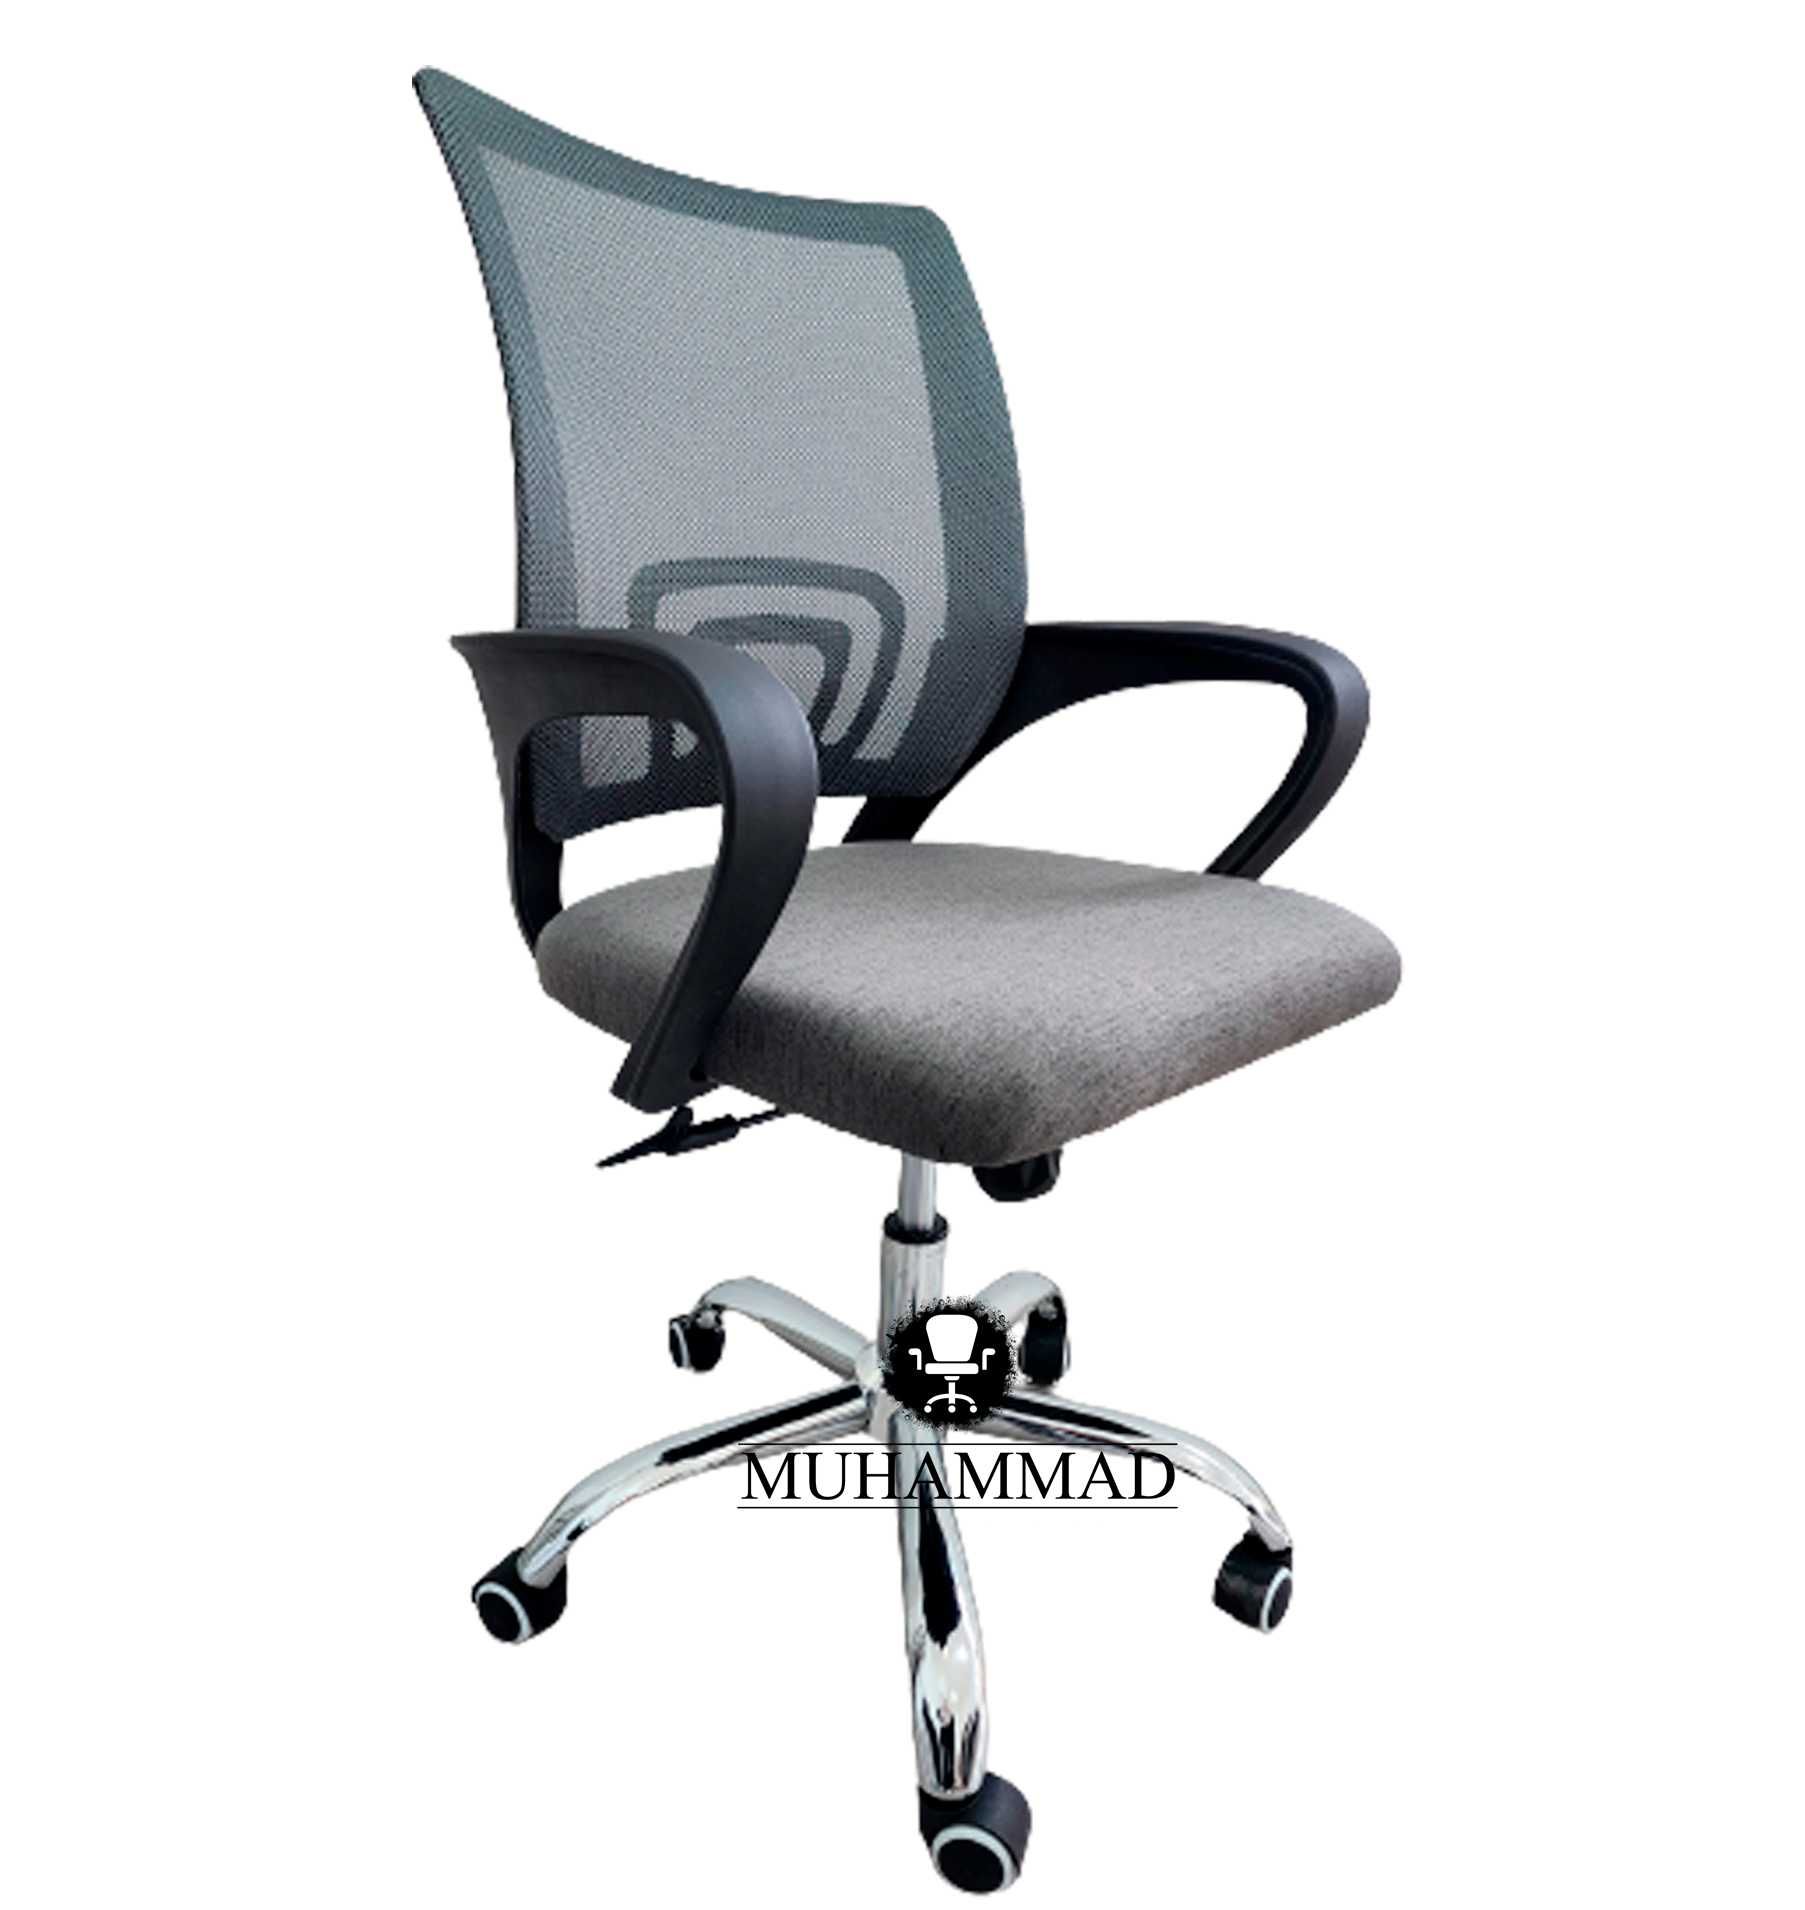 Офисное кресло Solo max оптом или в розницу (доставка бесплатная)